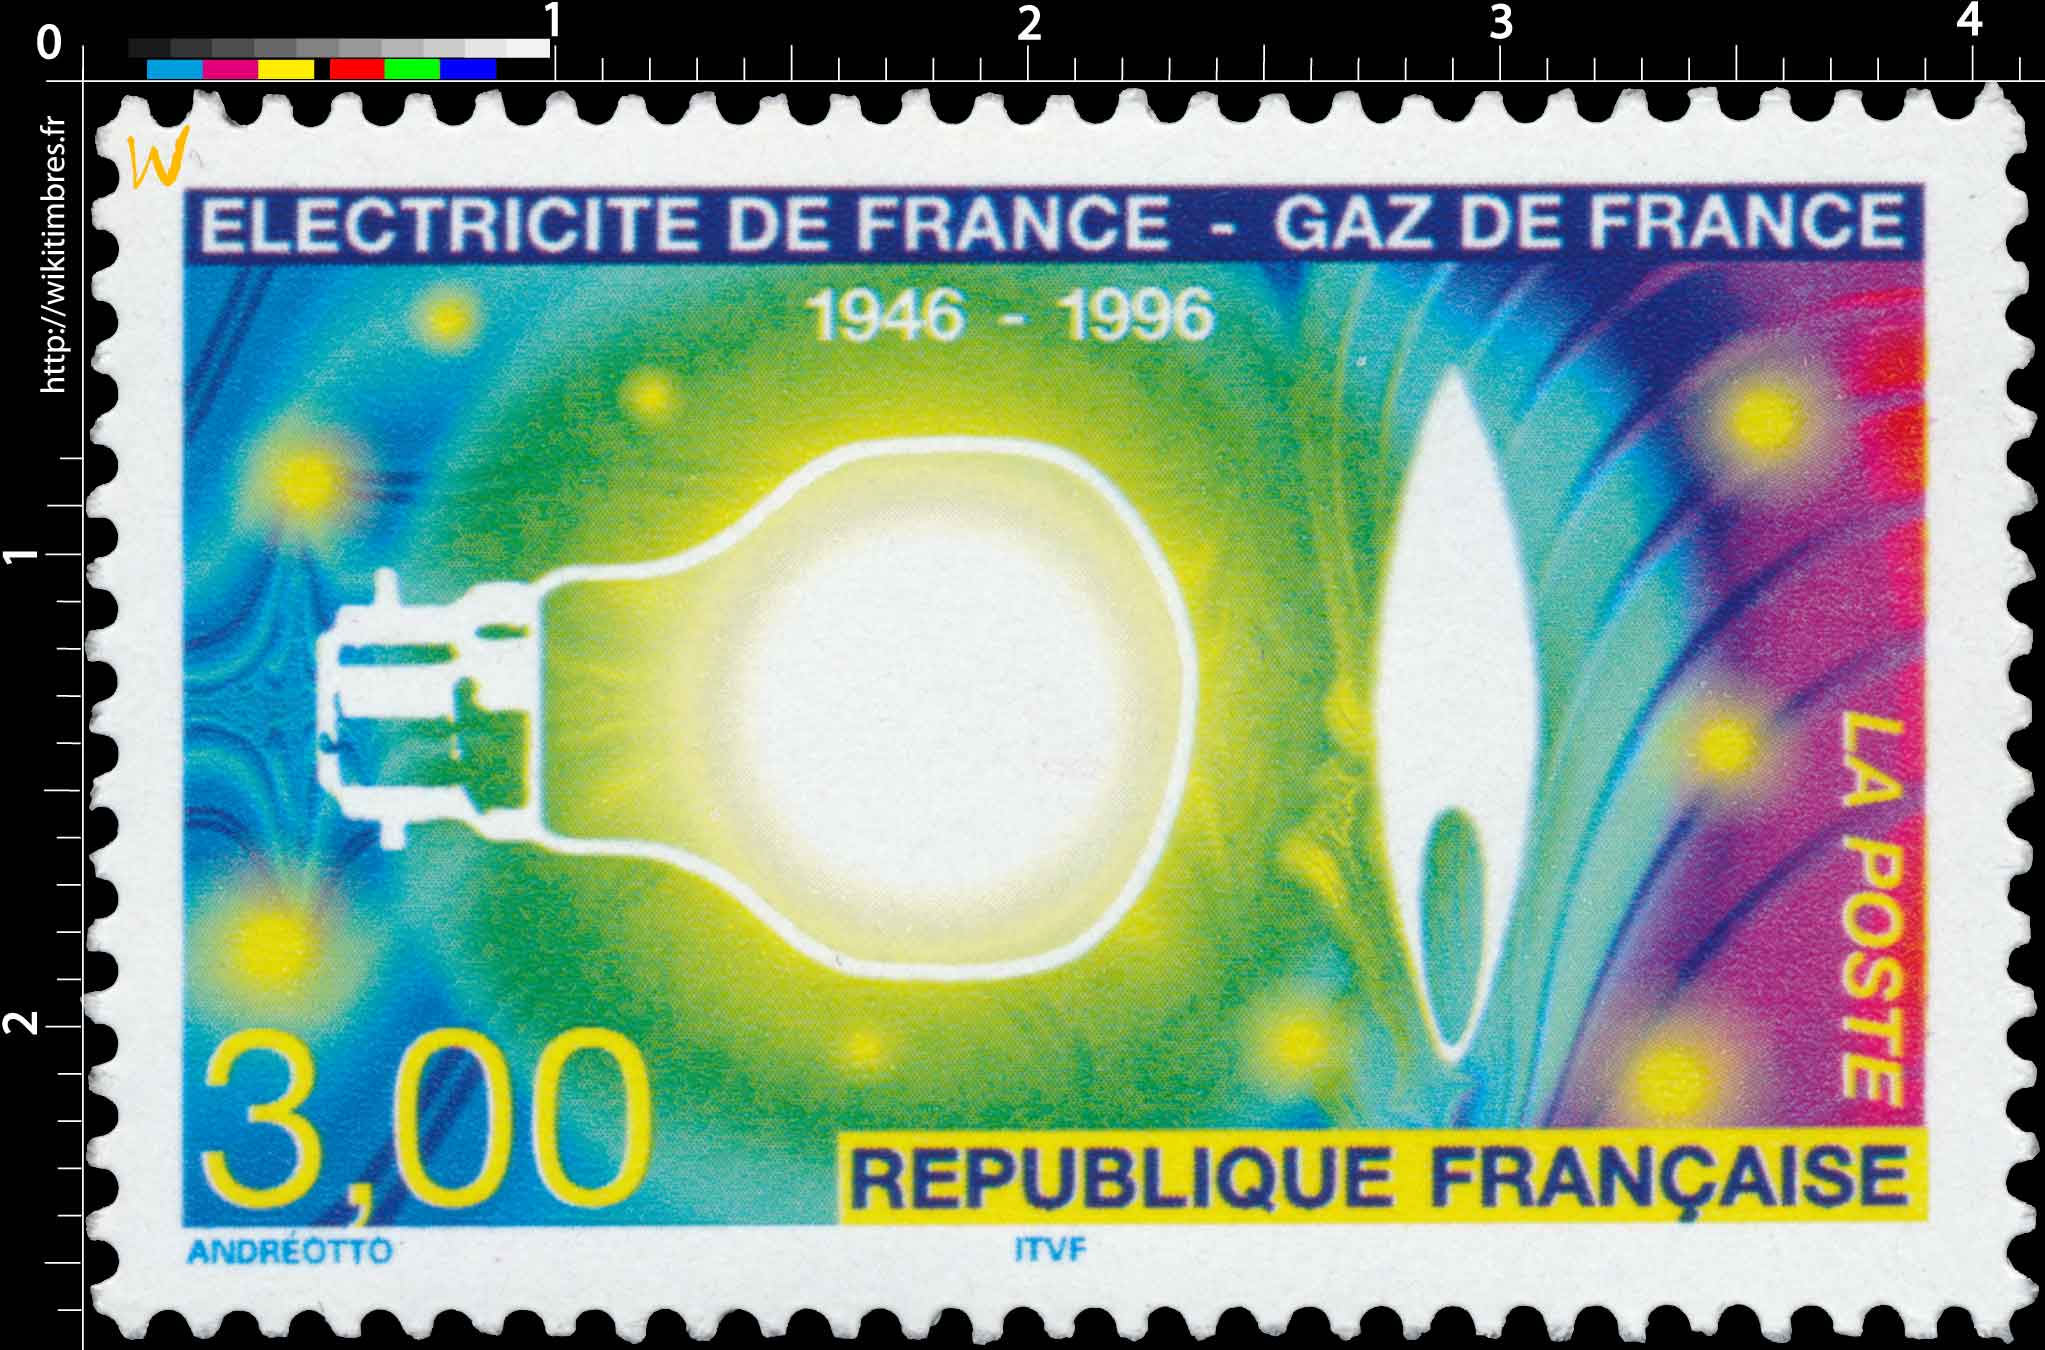 ÉLECTRICITÉ DE FRANCE - GAZ DE FRANCE 1946-1996